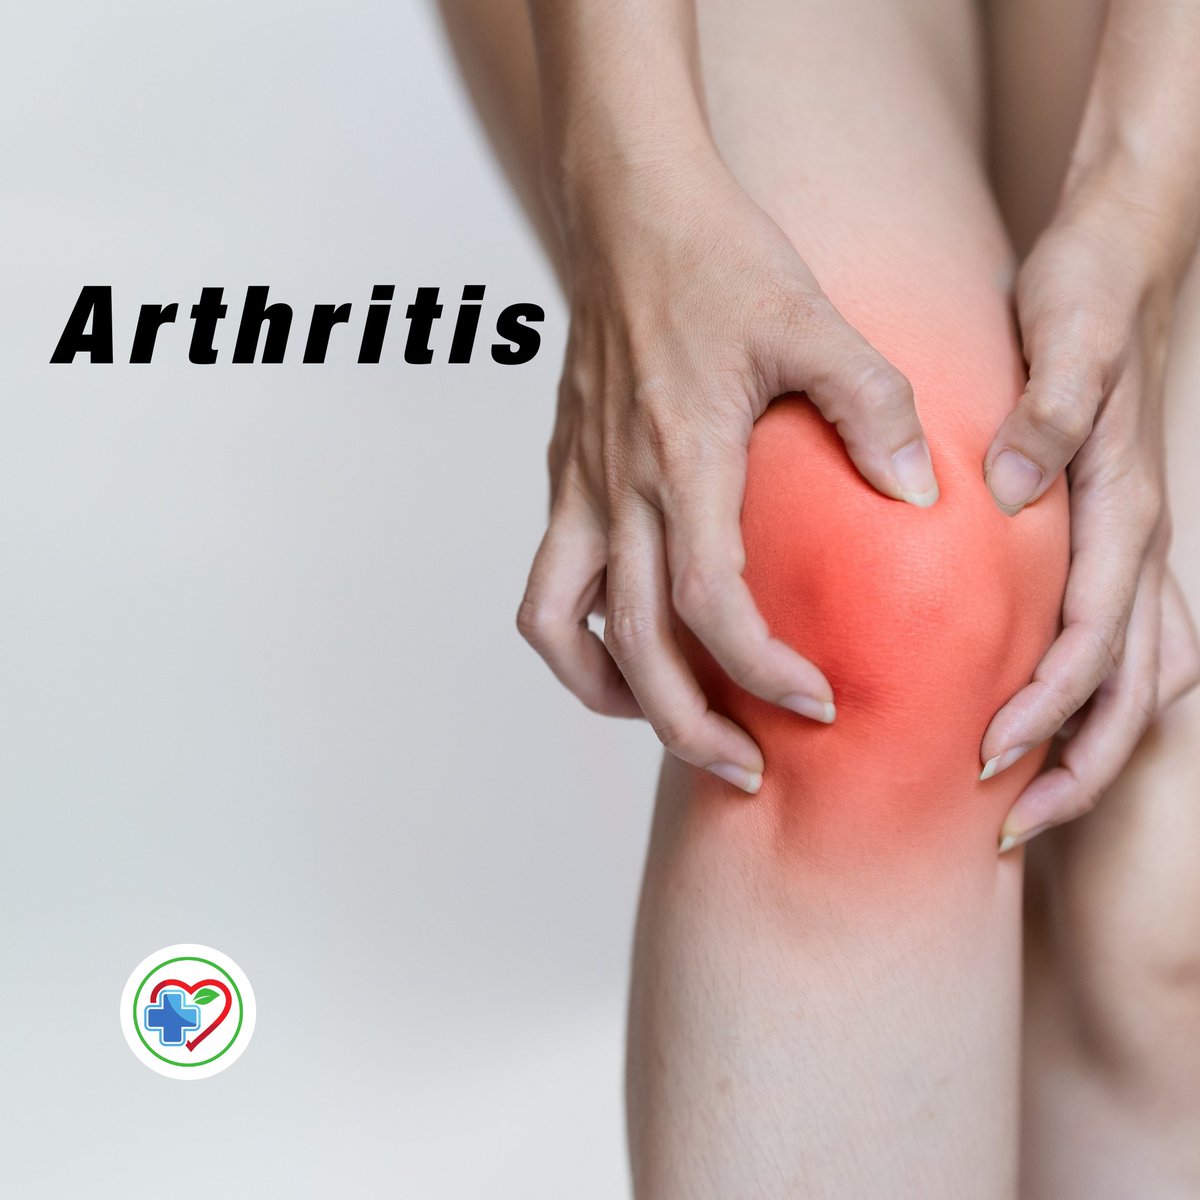 Arthritis
drjmeyer.co.za/arthritis/
#arthritis #jointpain #jointpainrelief #Pretoria #doctors